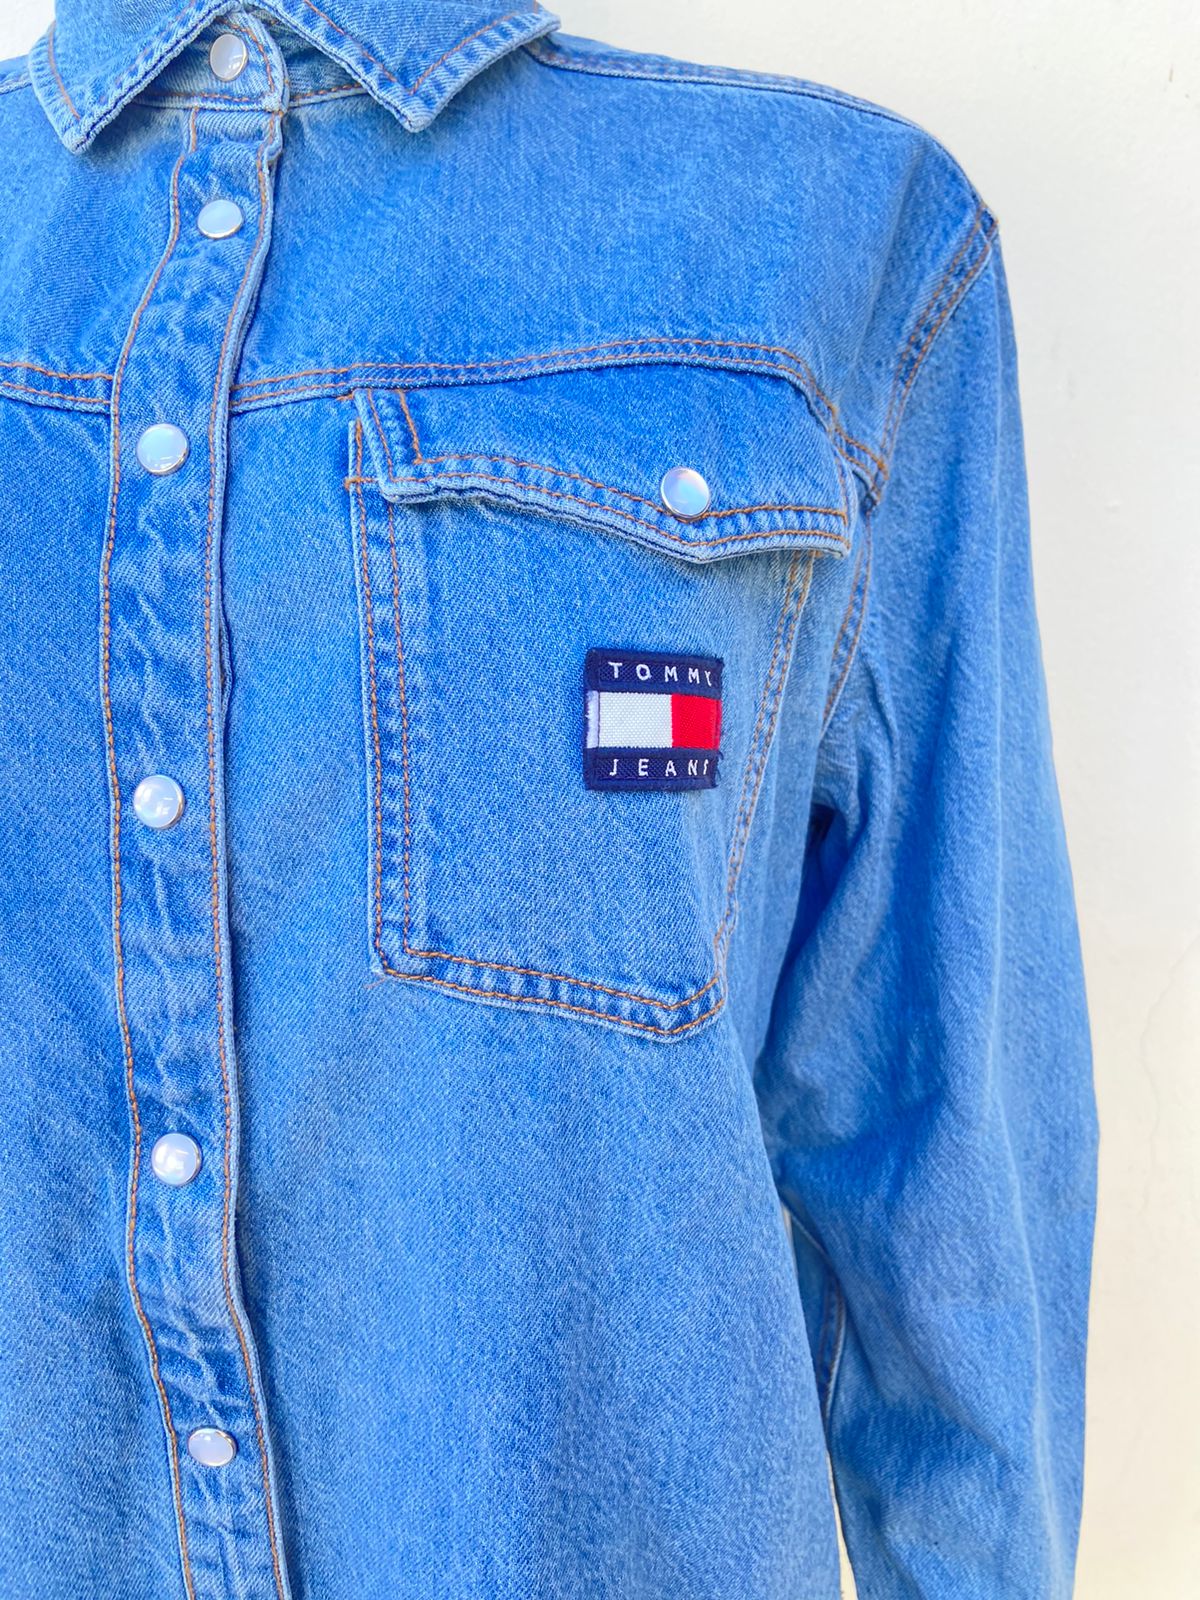 Vestido Tommy Hilfiger original jean en color azul claro (blusón) con dos bolsillos delante con pequeño logo con letras TOMMY HILFIGER en color blanco y azul botones blanco y bolsillos a los lados, manga larga.